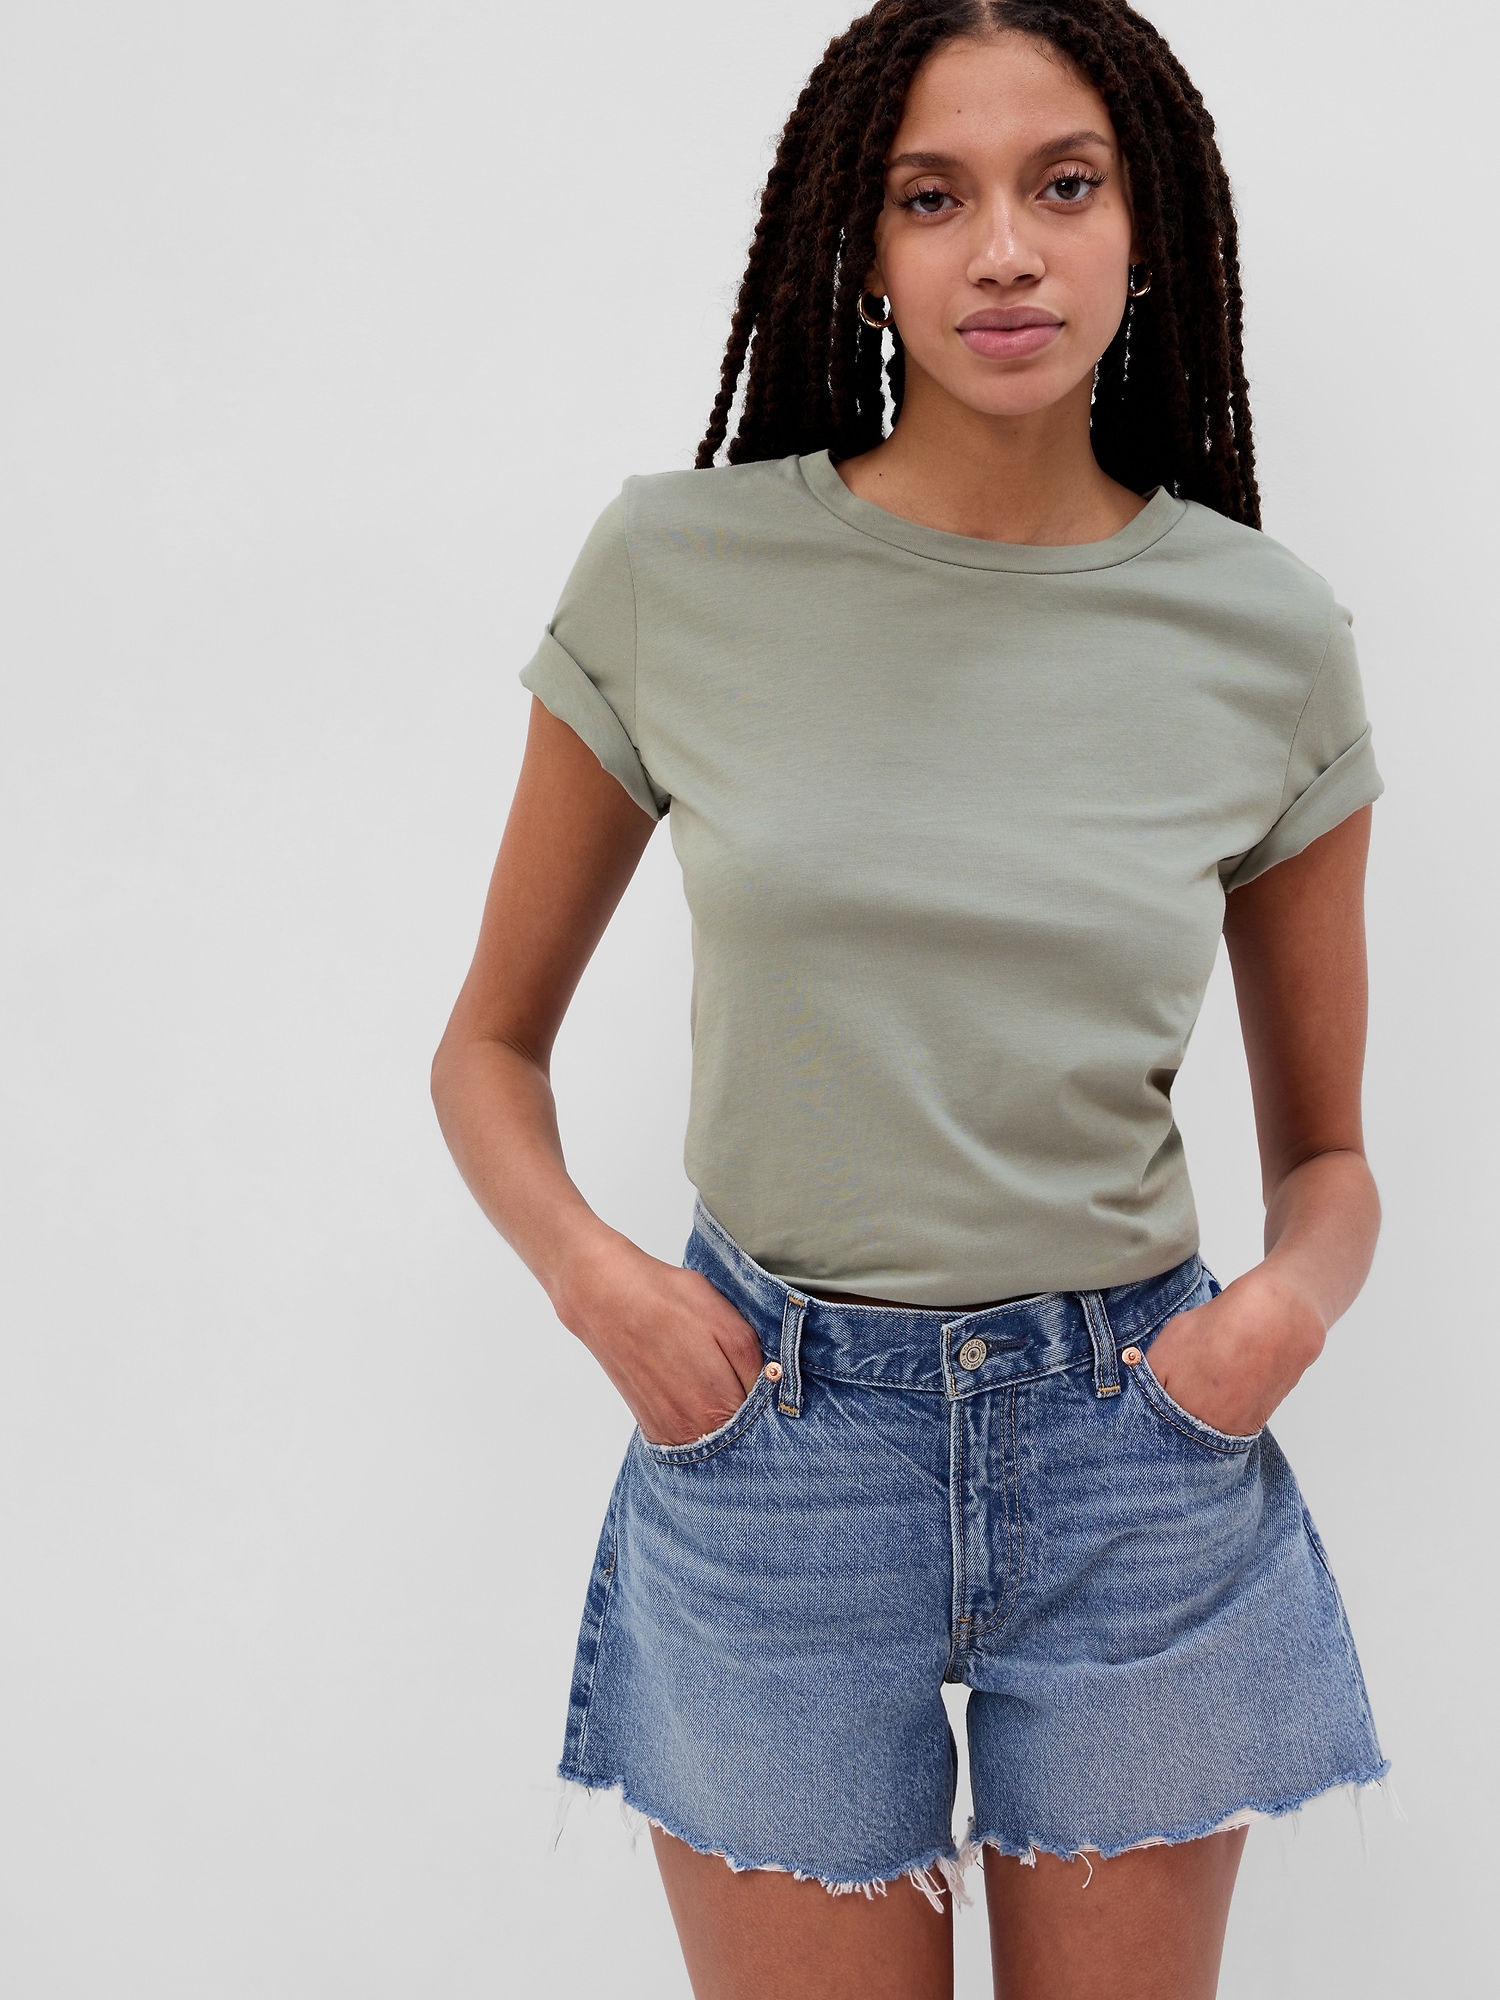 Cotton Vintage Crewneck T-Shirt | Gap